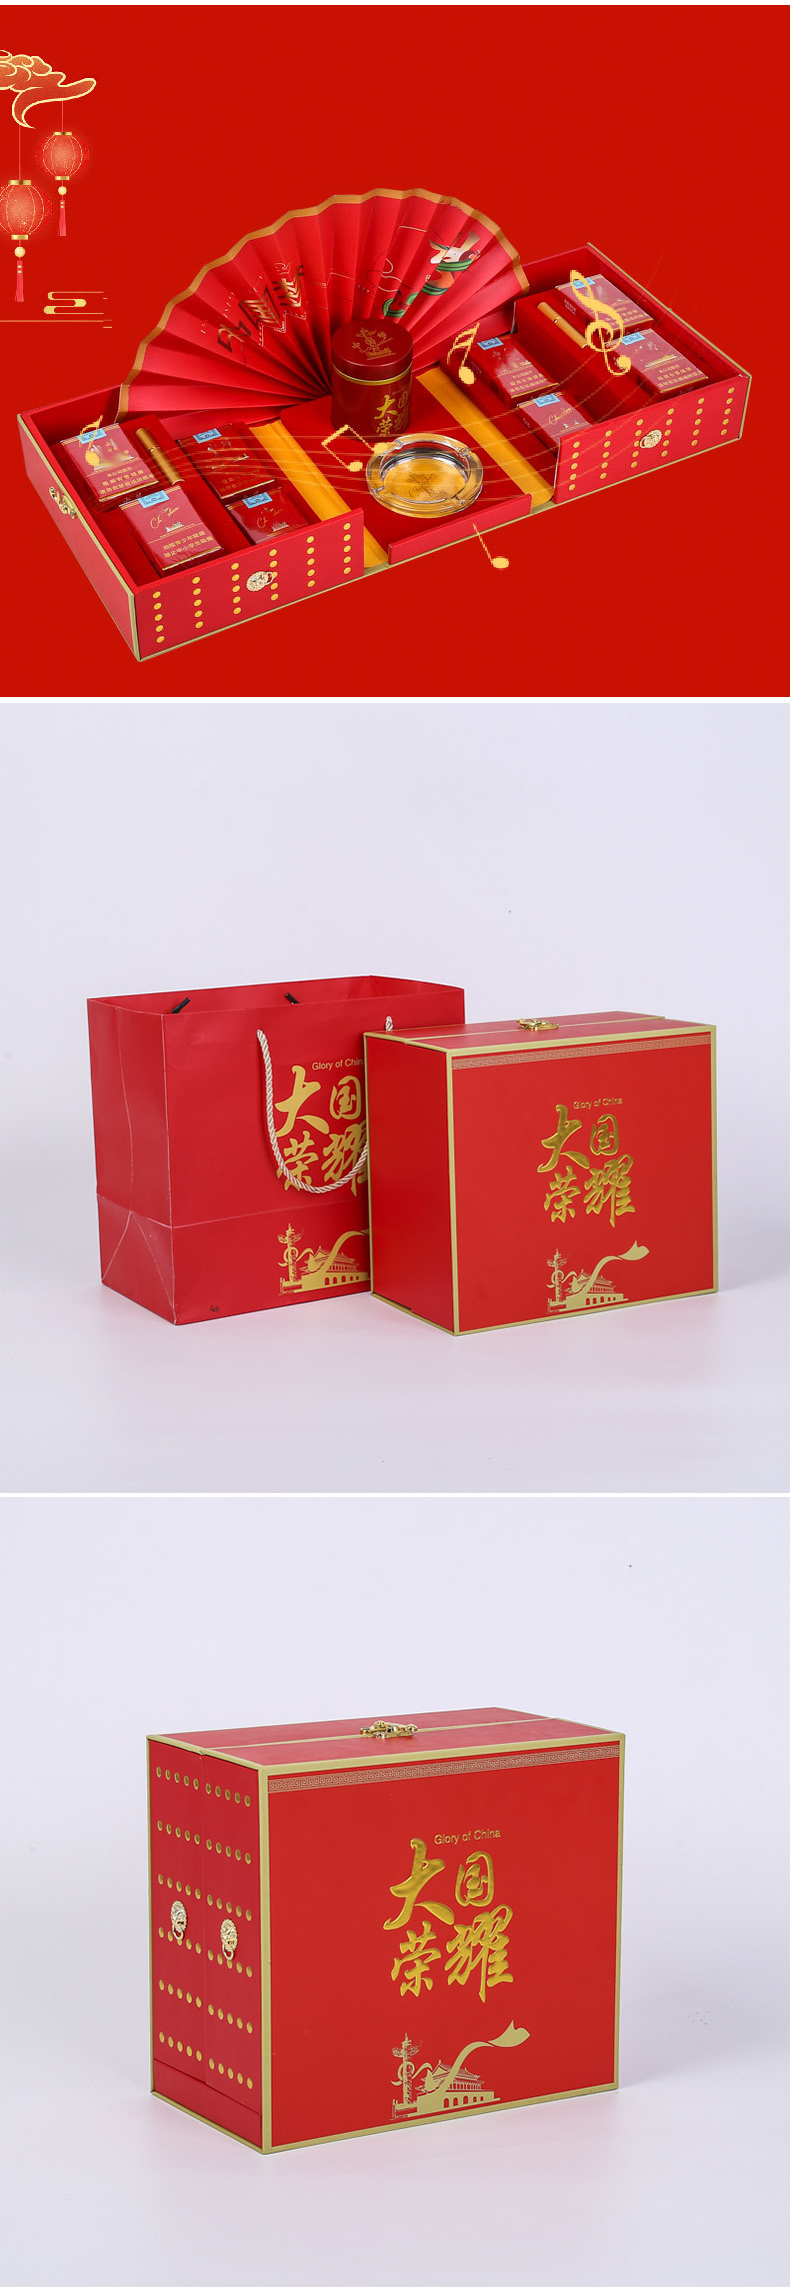 国潮烟酒礼品盒(图2)